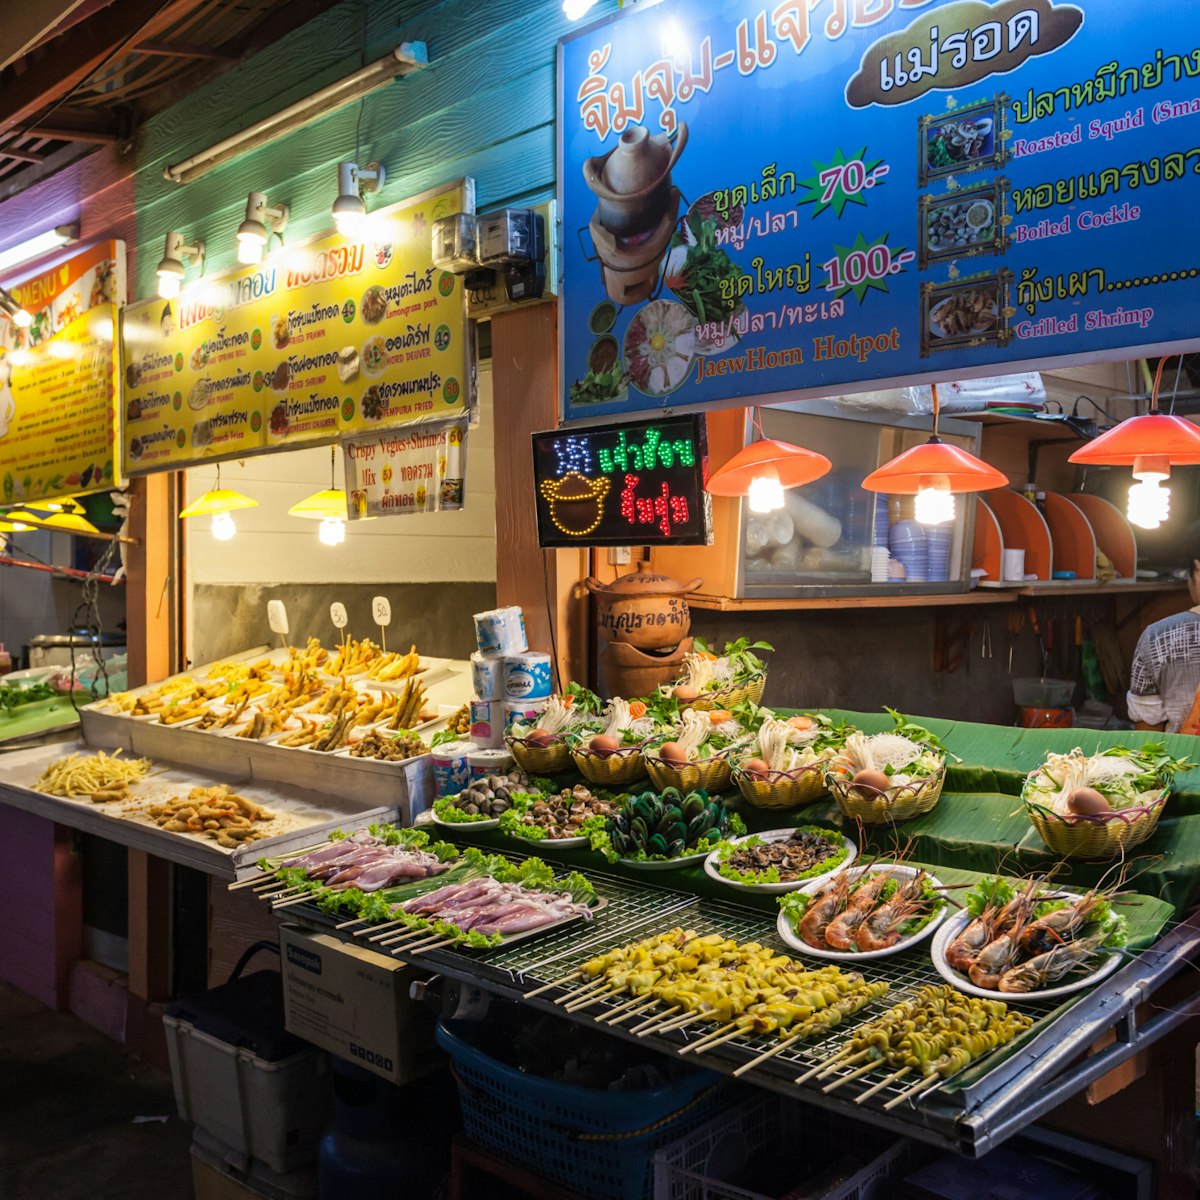 500px Photo ID: 158818749 - CHIANG RAI, THAILAND - NOVEMBER 05, 2014: Food Court at Chiang Rai Night Market.